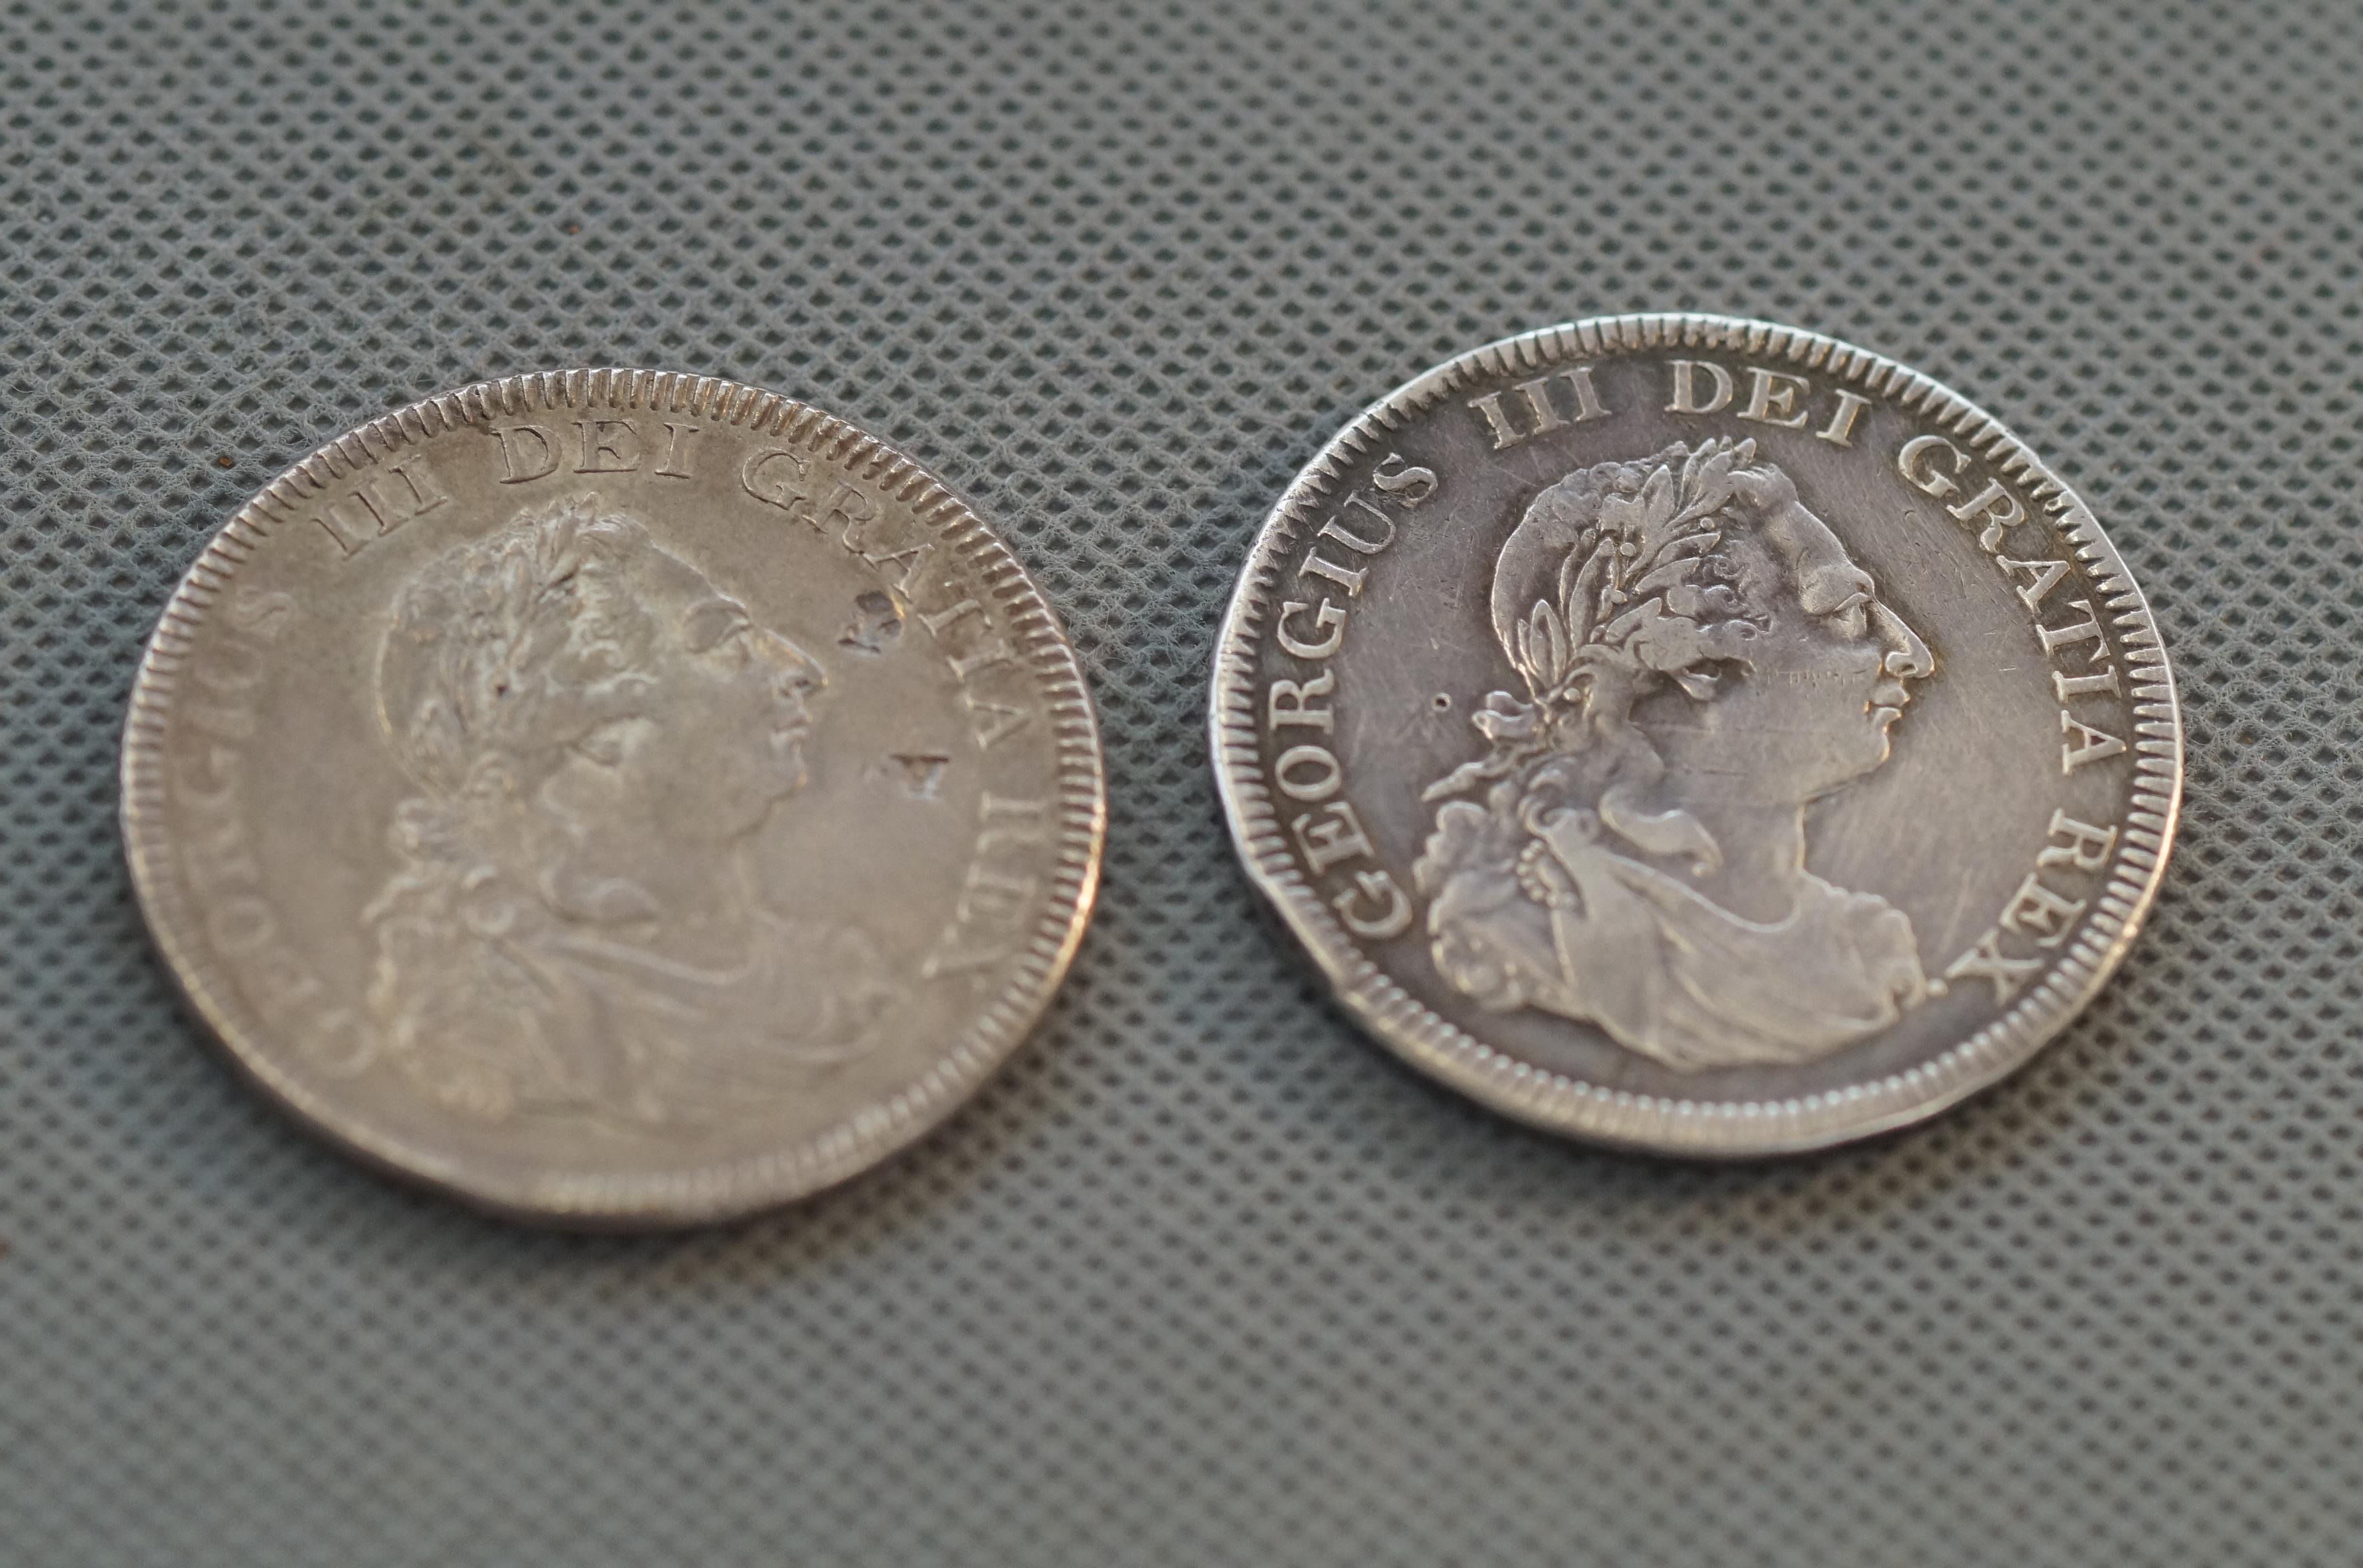 2x George III silver dollars dated 1804